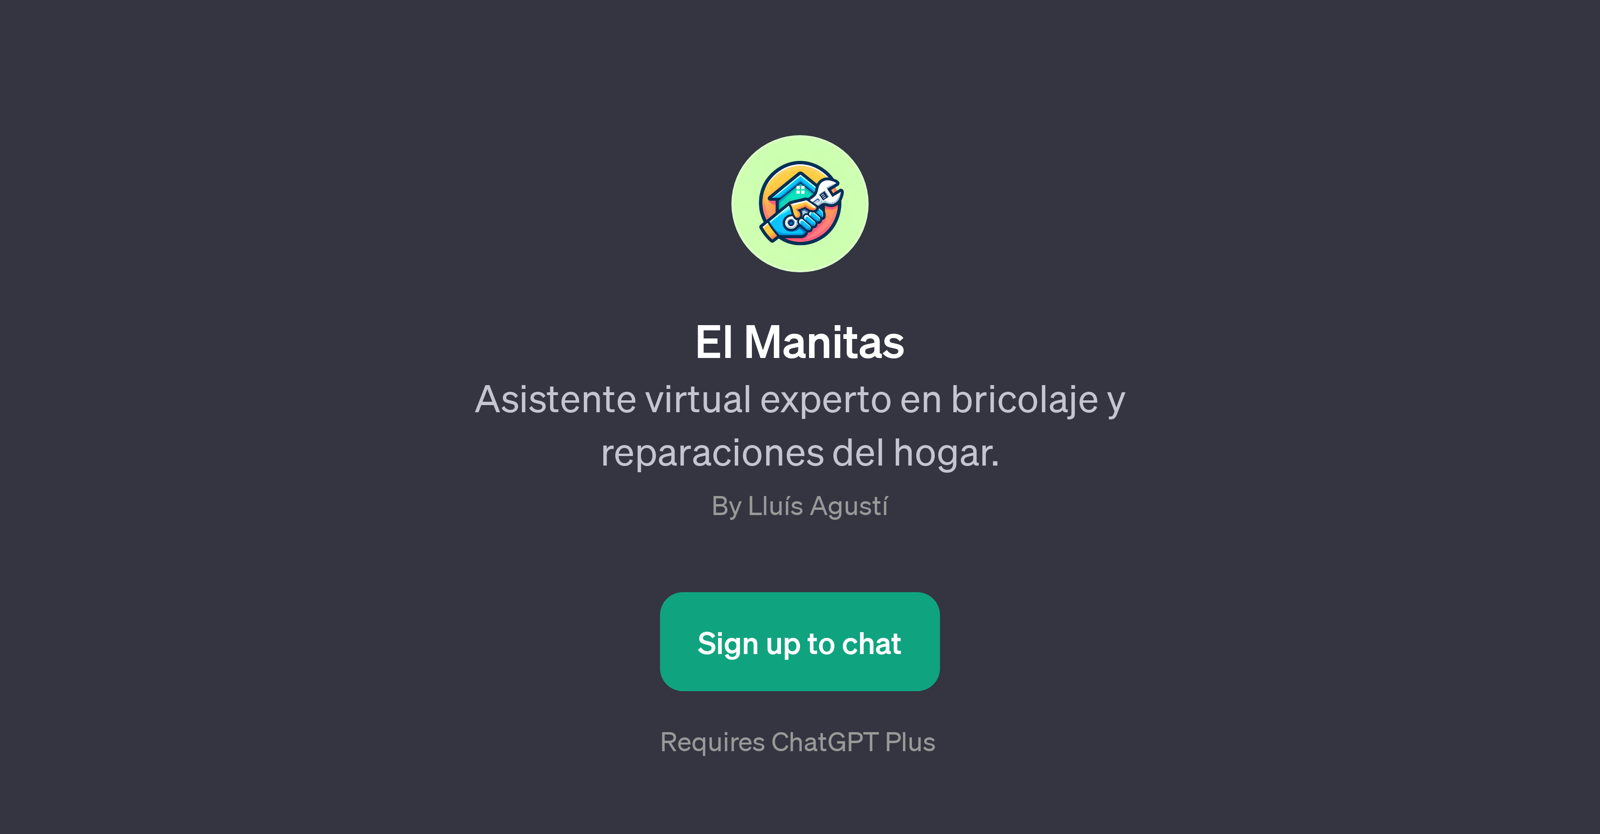 El Manitas website